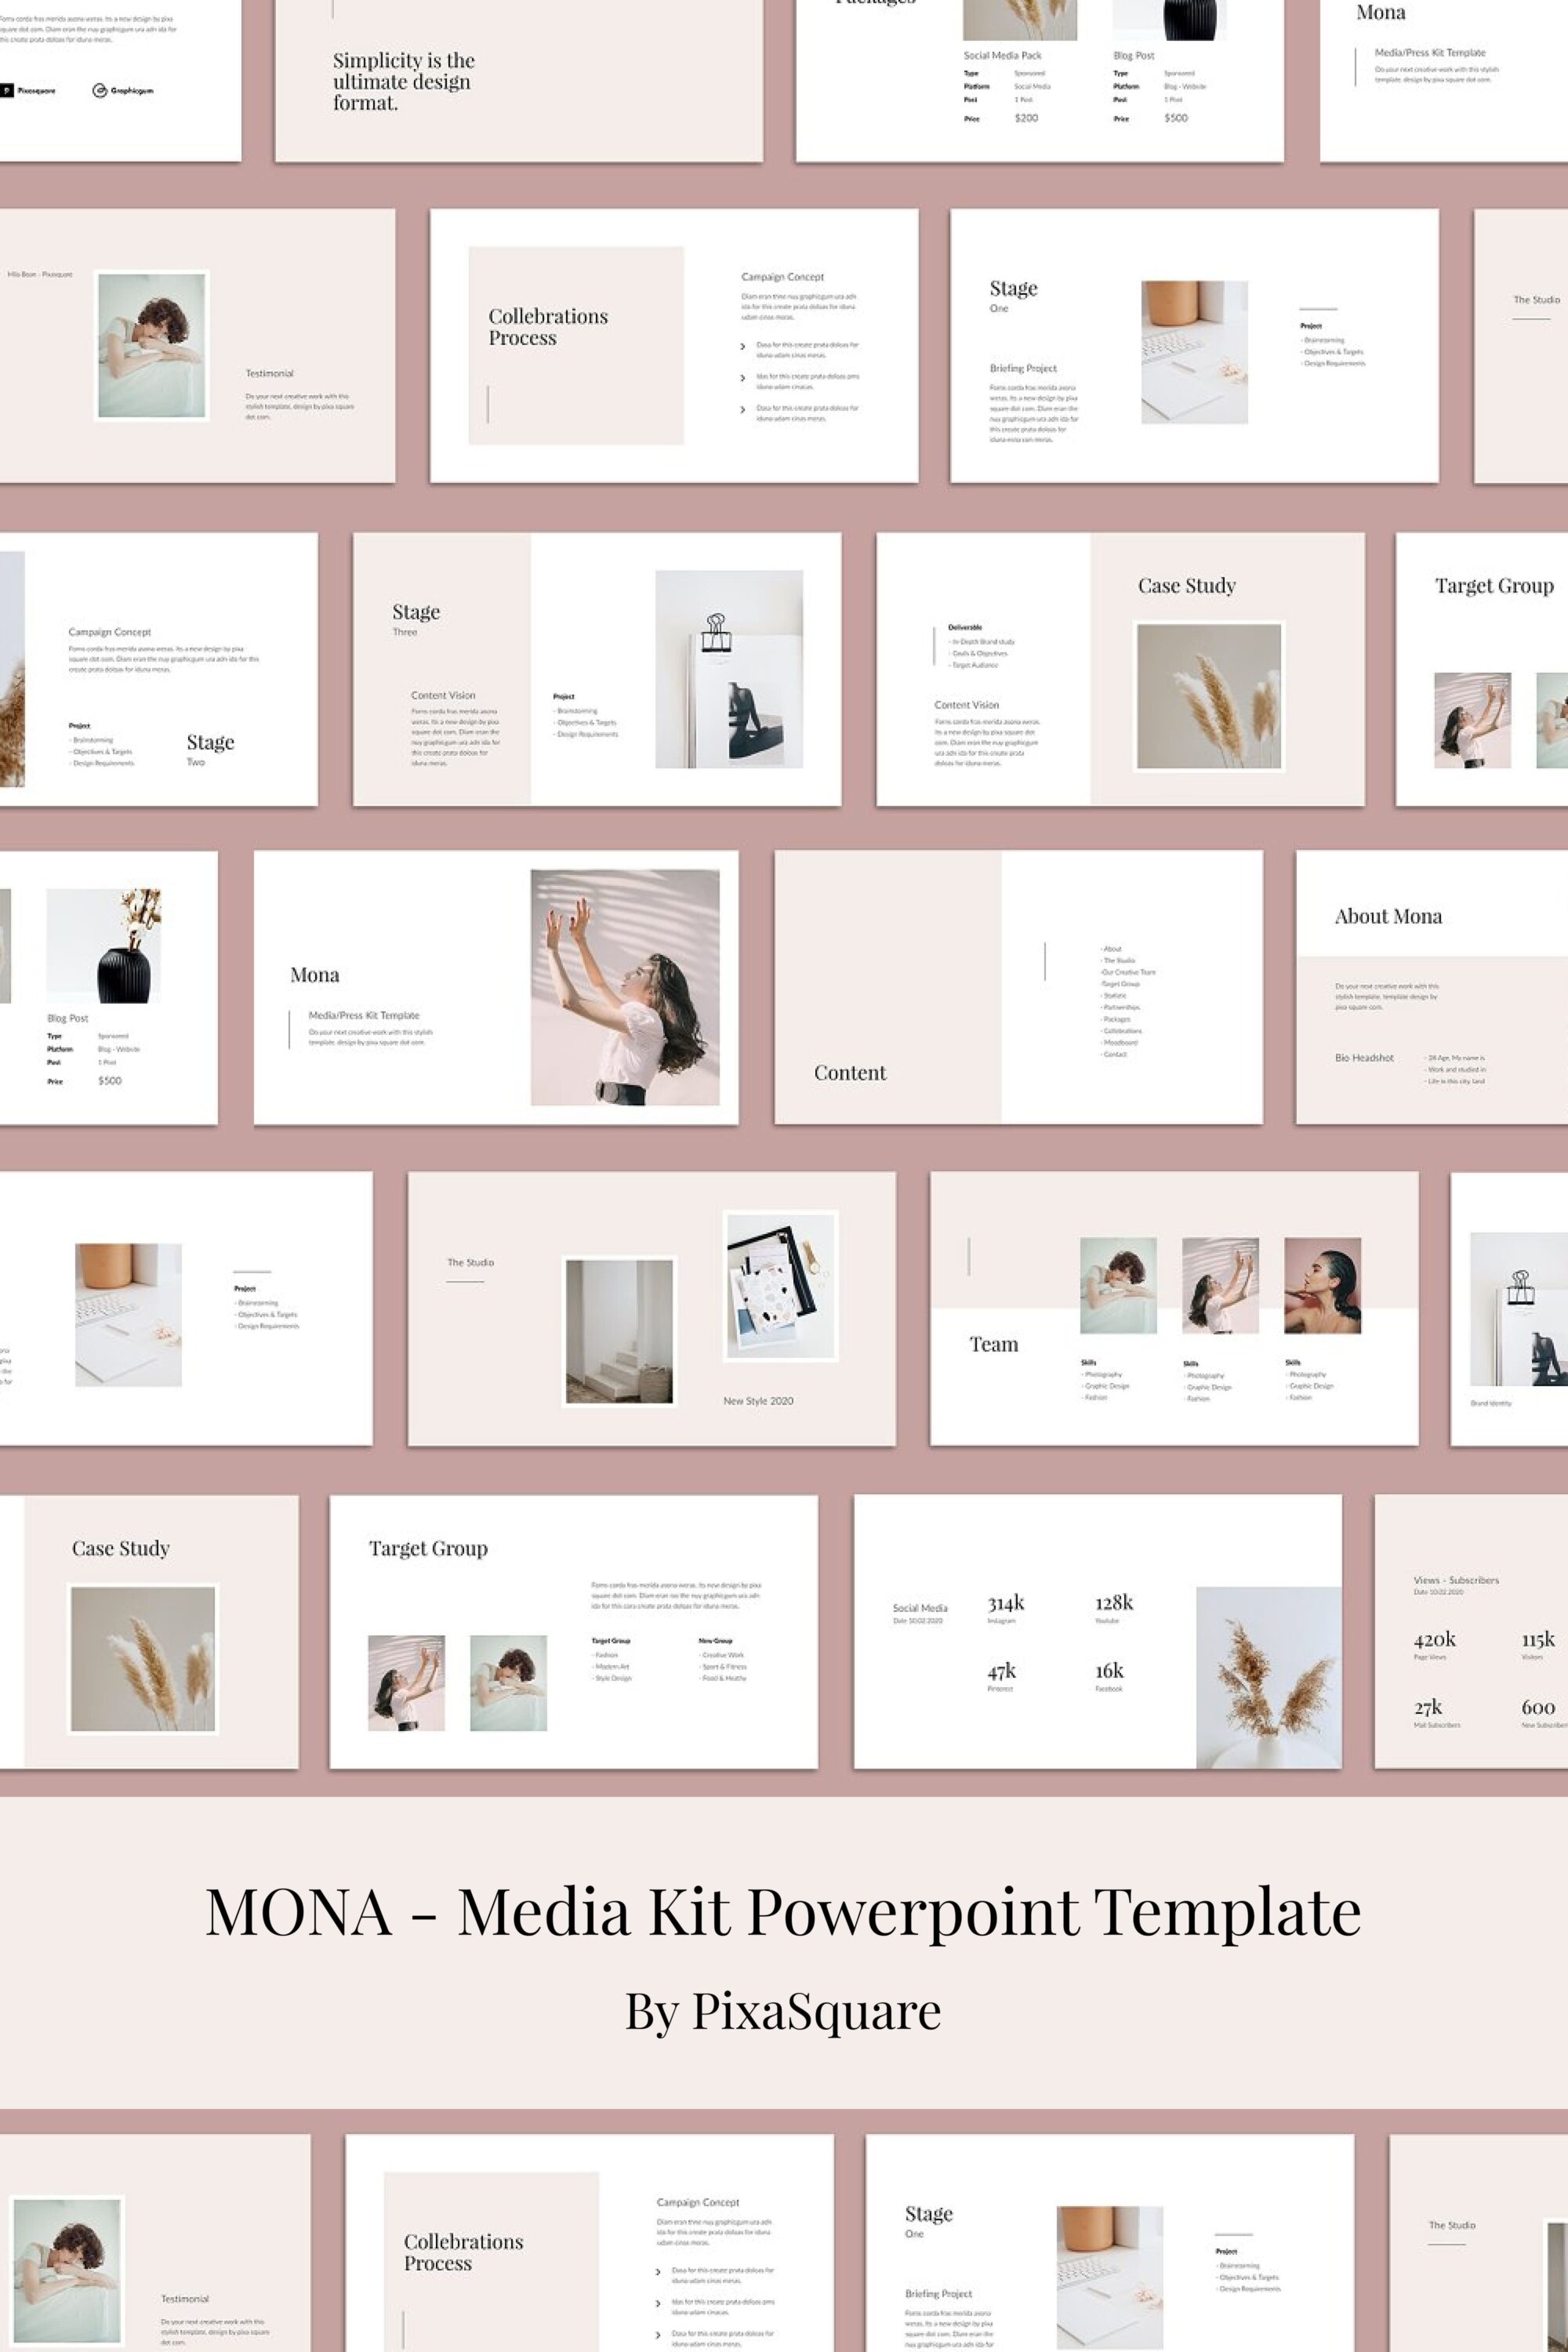 mona media kit powerpoint template 03